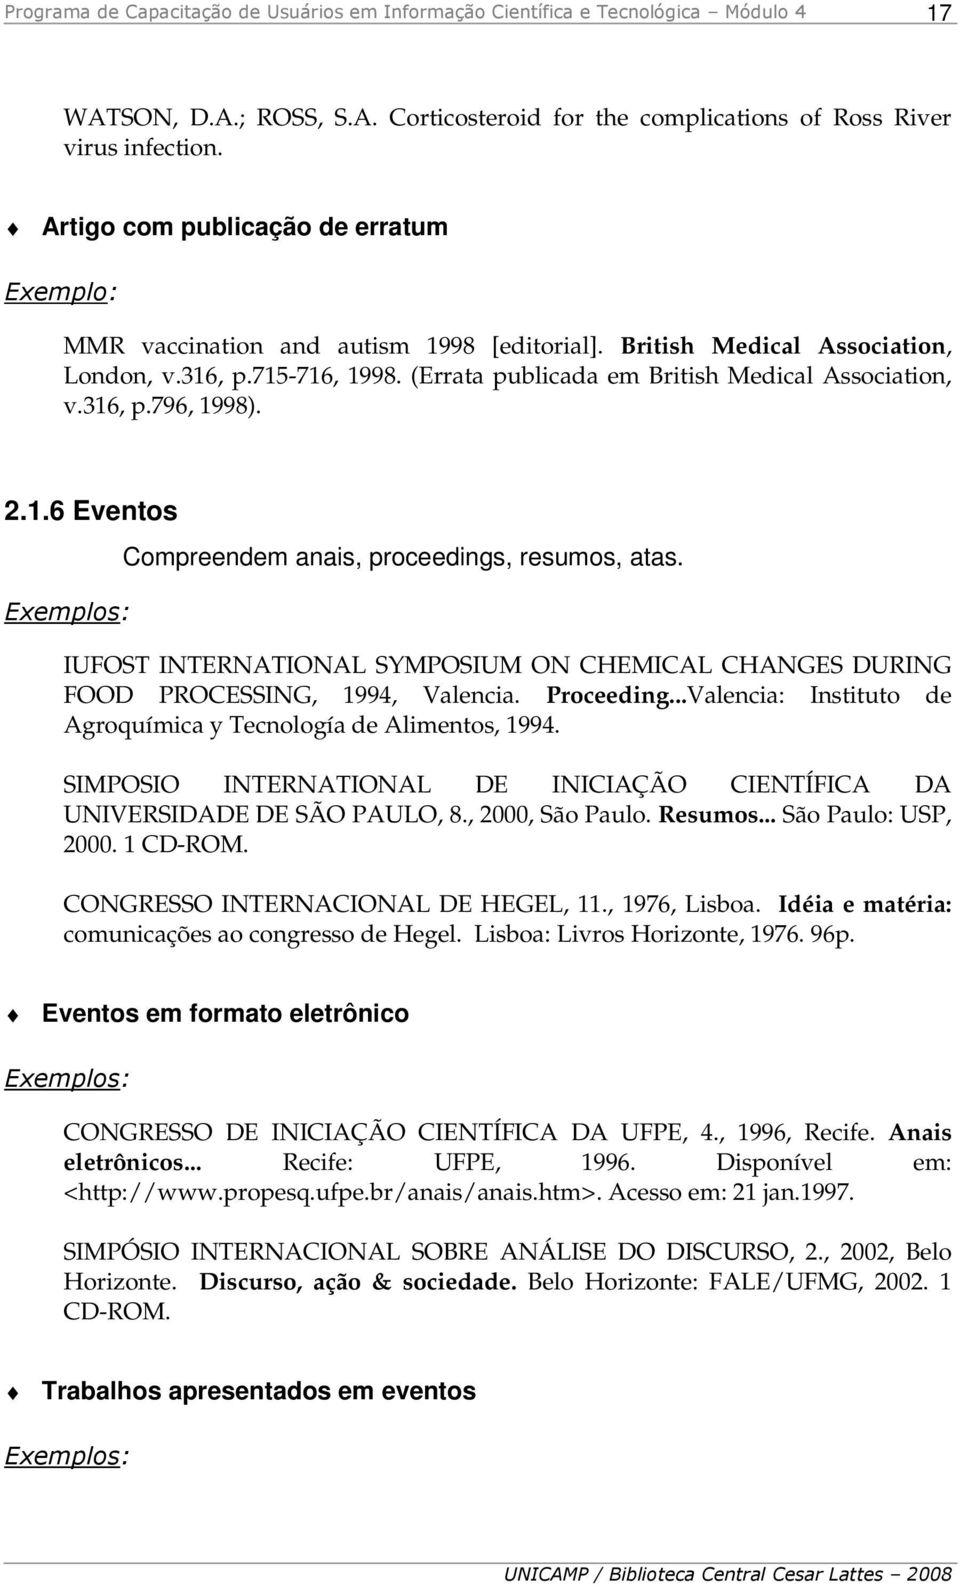 IUFOST INTERNATIONAL SYMPOSIUM ON CHEMICAL CHANGES DURING FOOD PROCESSING, 1994, Valencia. Proceeding...Valencia: Instituto de Agroquímica y Tecnología de Alimentos, 1994.